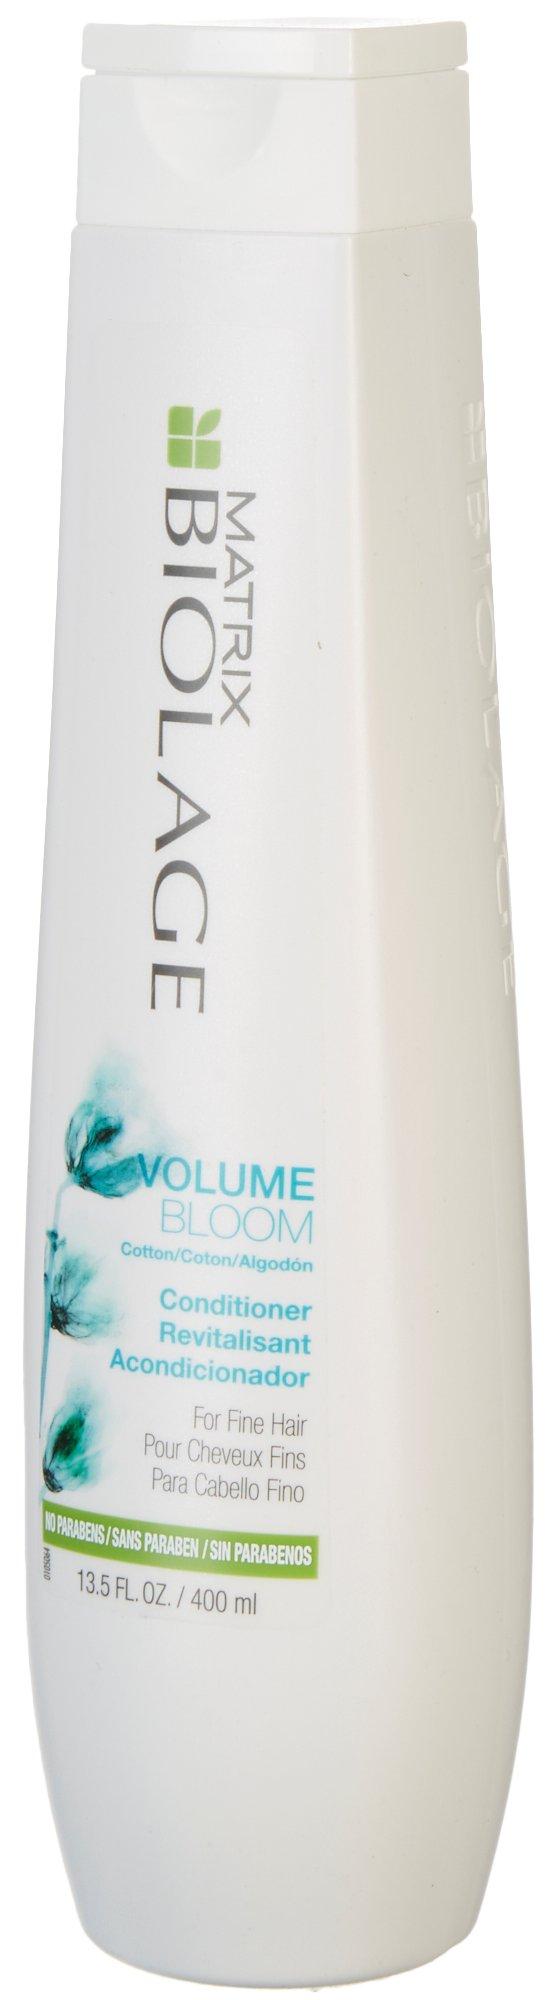 Biolage Volume Bloom Conditioner For Fine Hair 13.5 Fl. Oz.